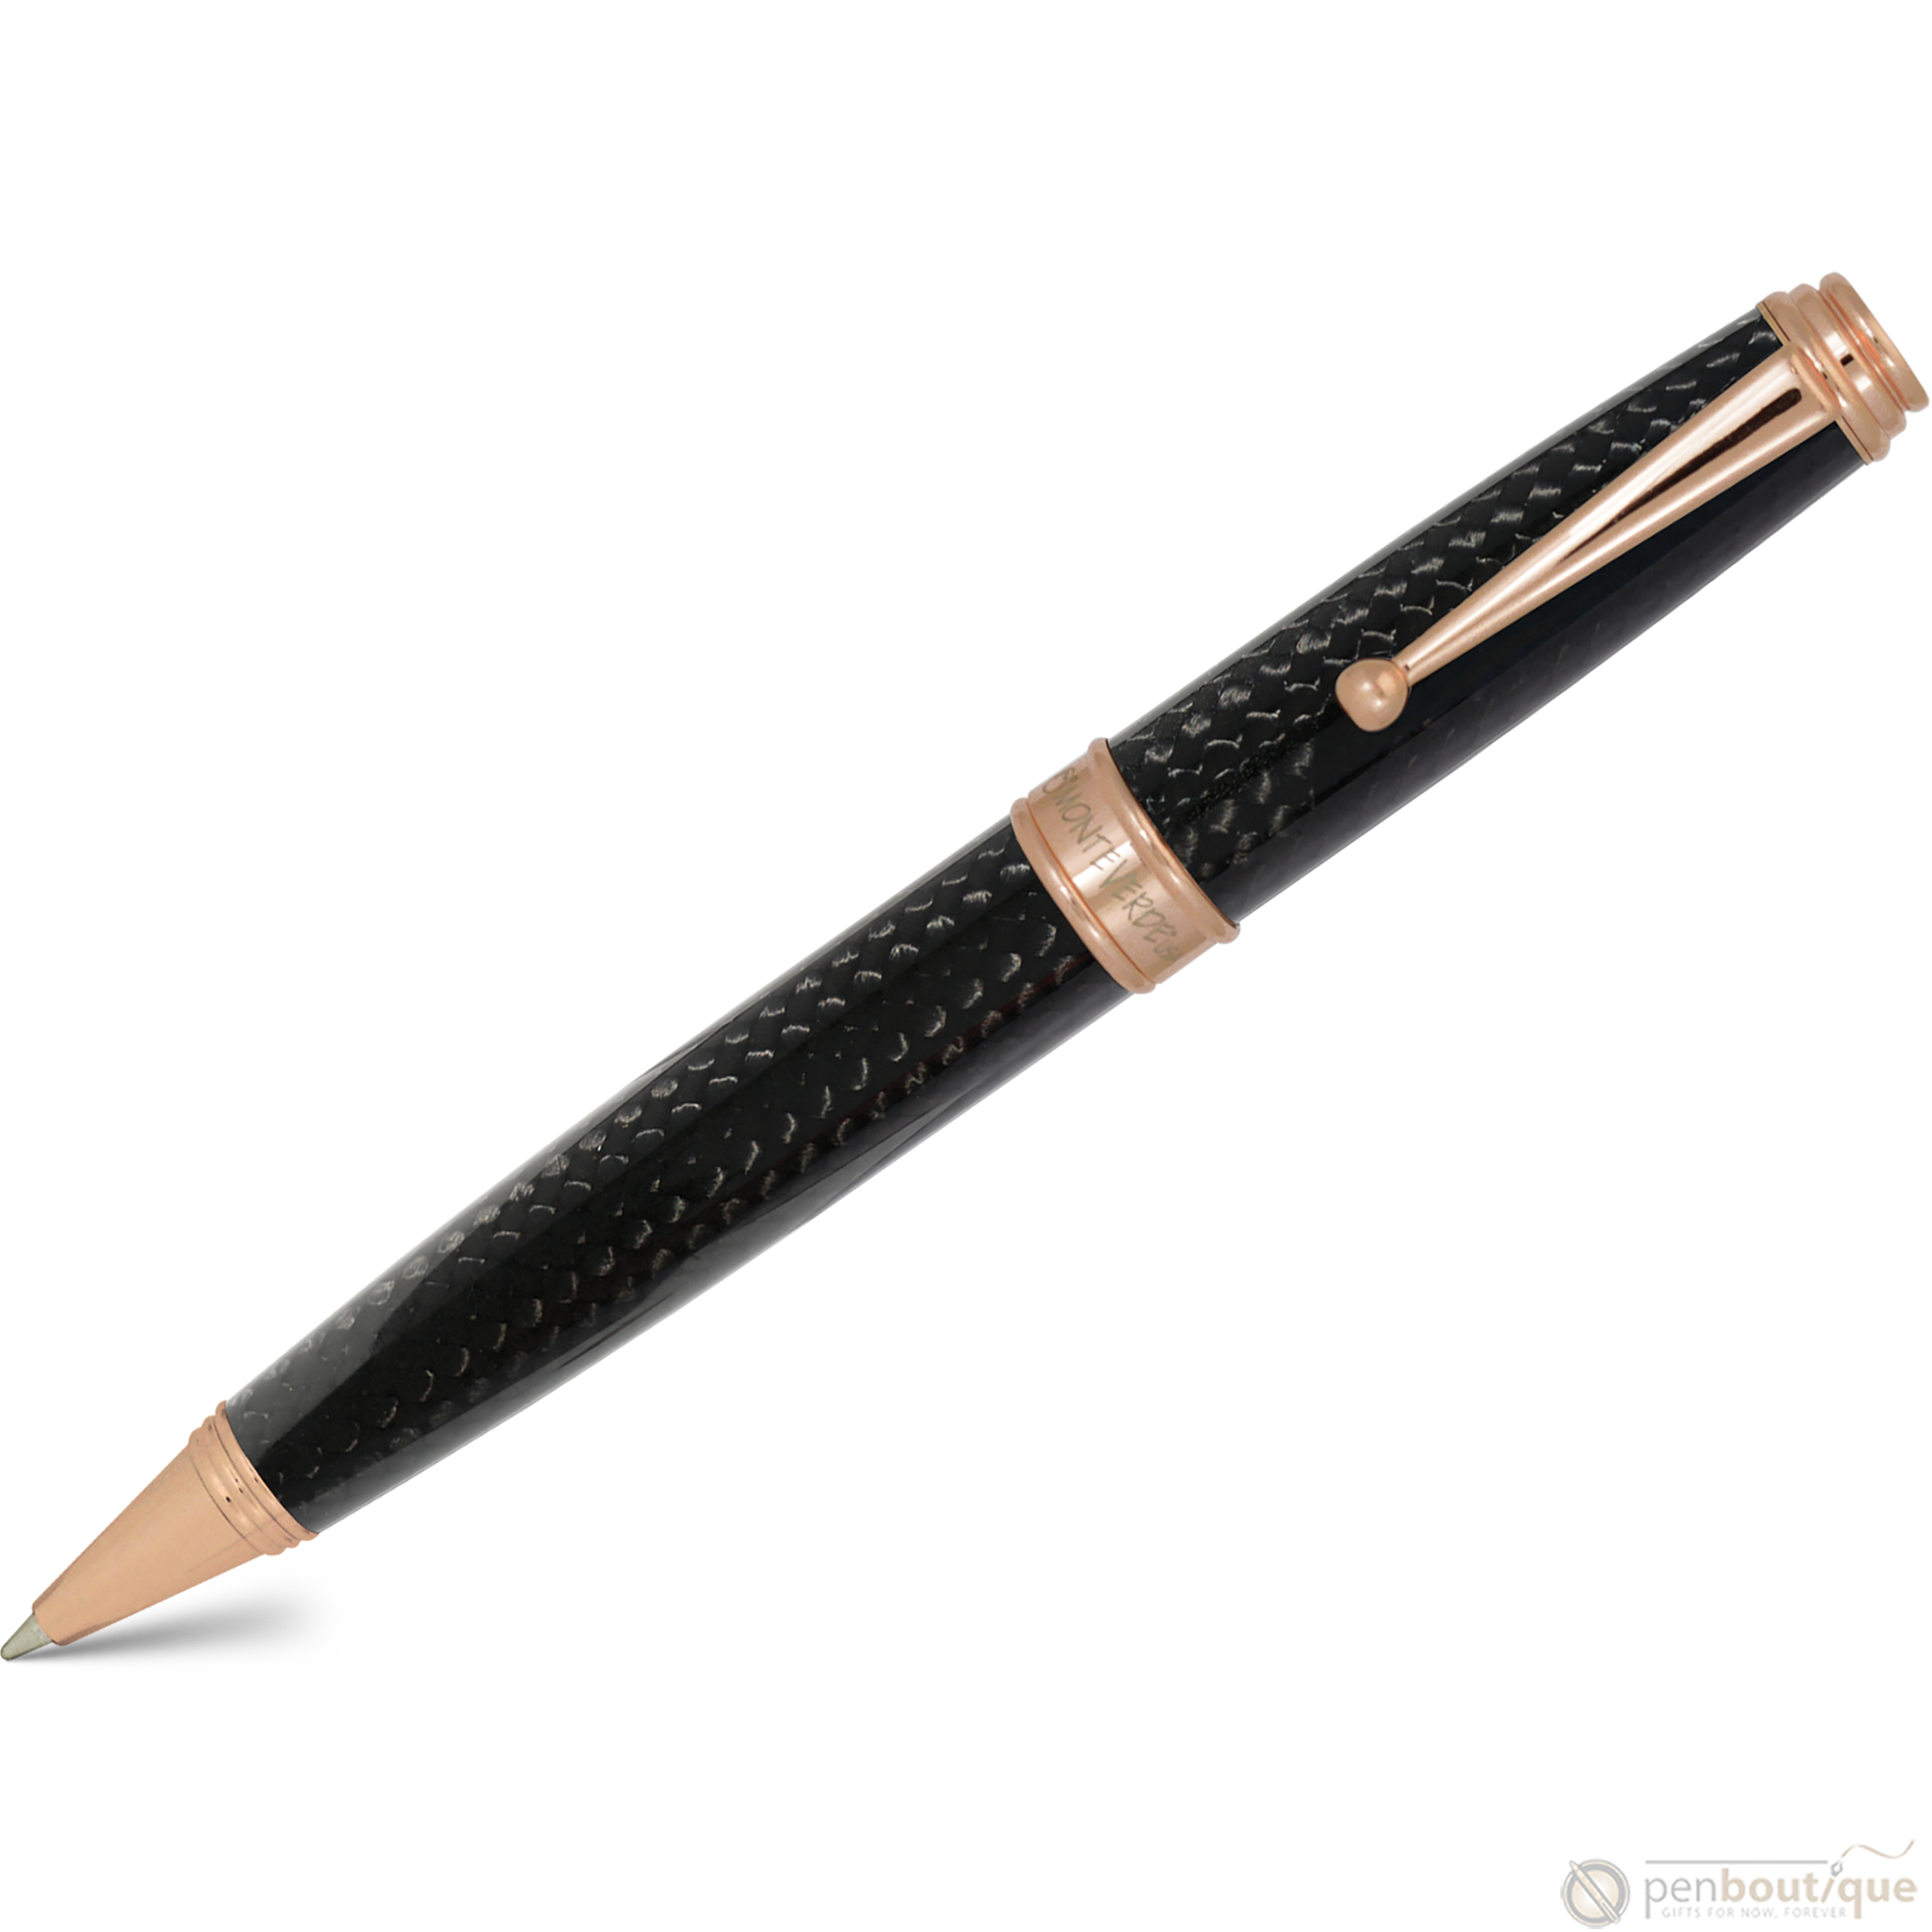 Monteverde Invincia Deluxe Ballpoint Pen Rose Gold-Pen Boutique Ltd